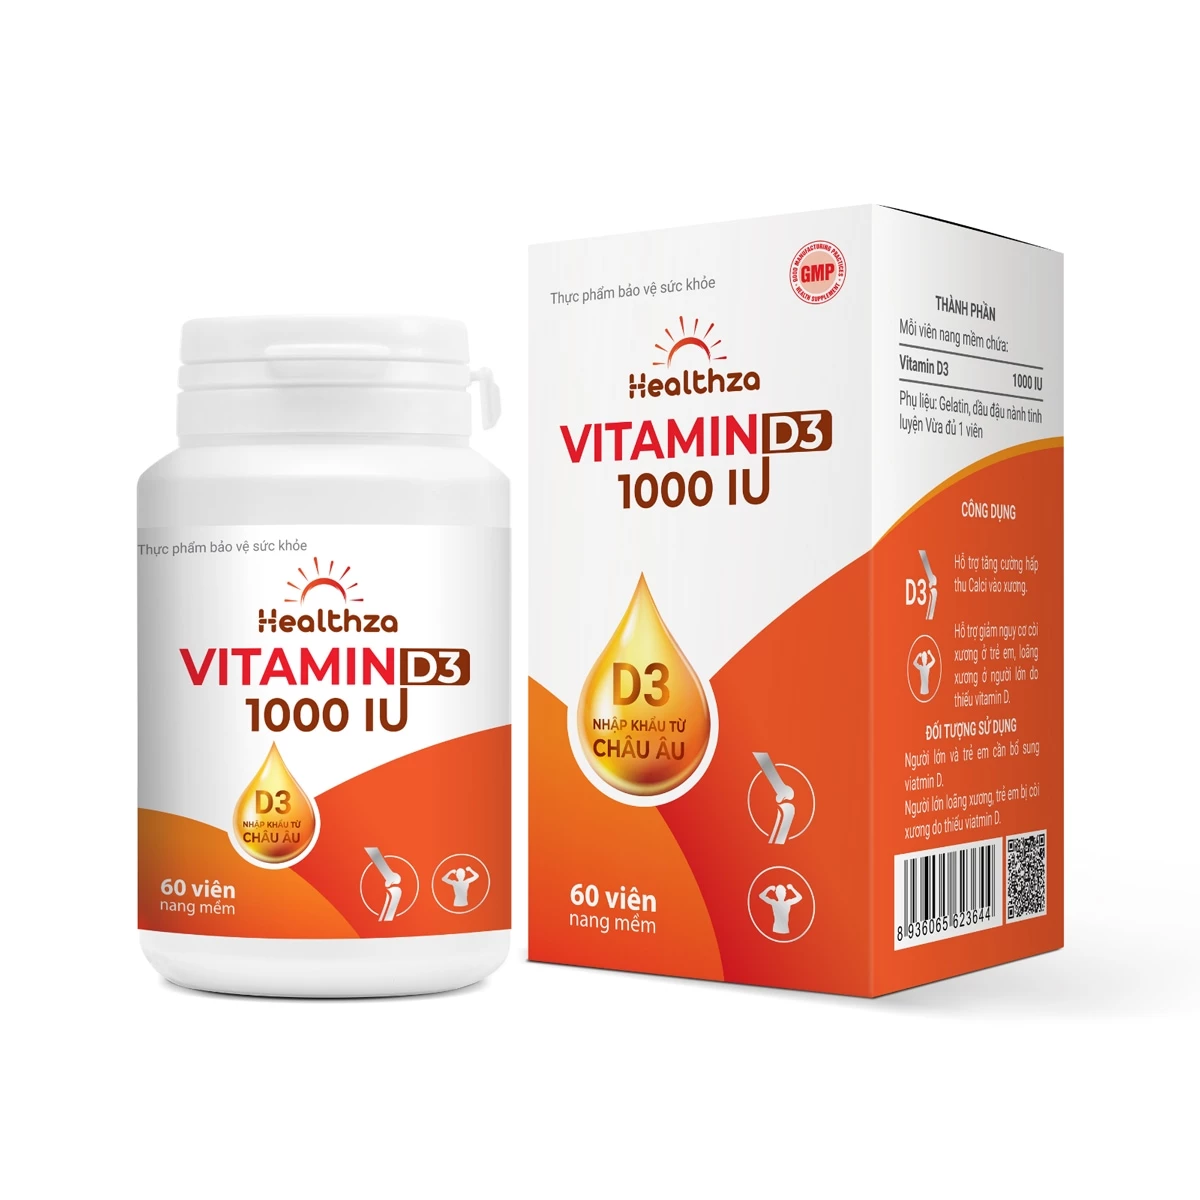 Healthza Vitamin D3 1000IU - Hỗ trợ tăng cường hấp thu calci giúp xương chắc khỏe